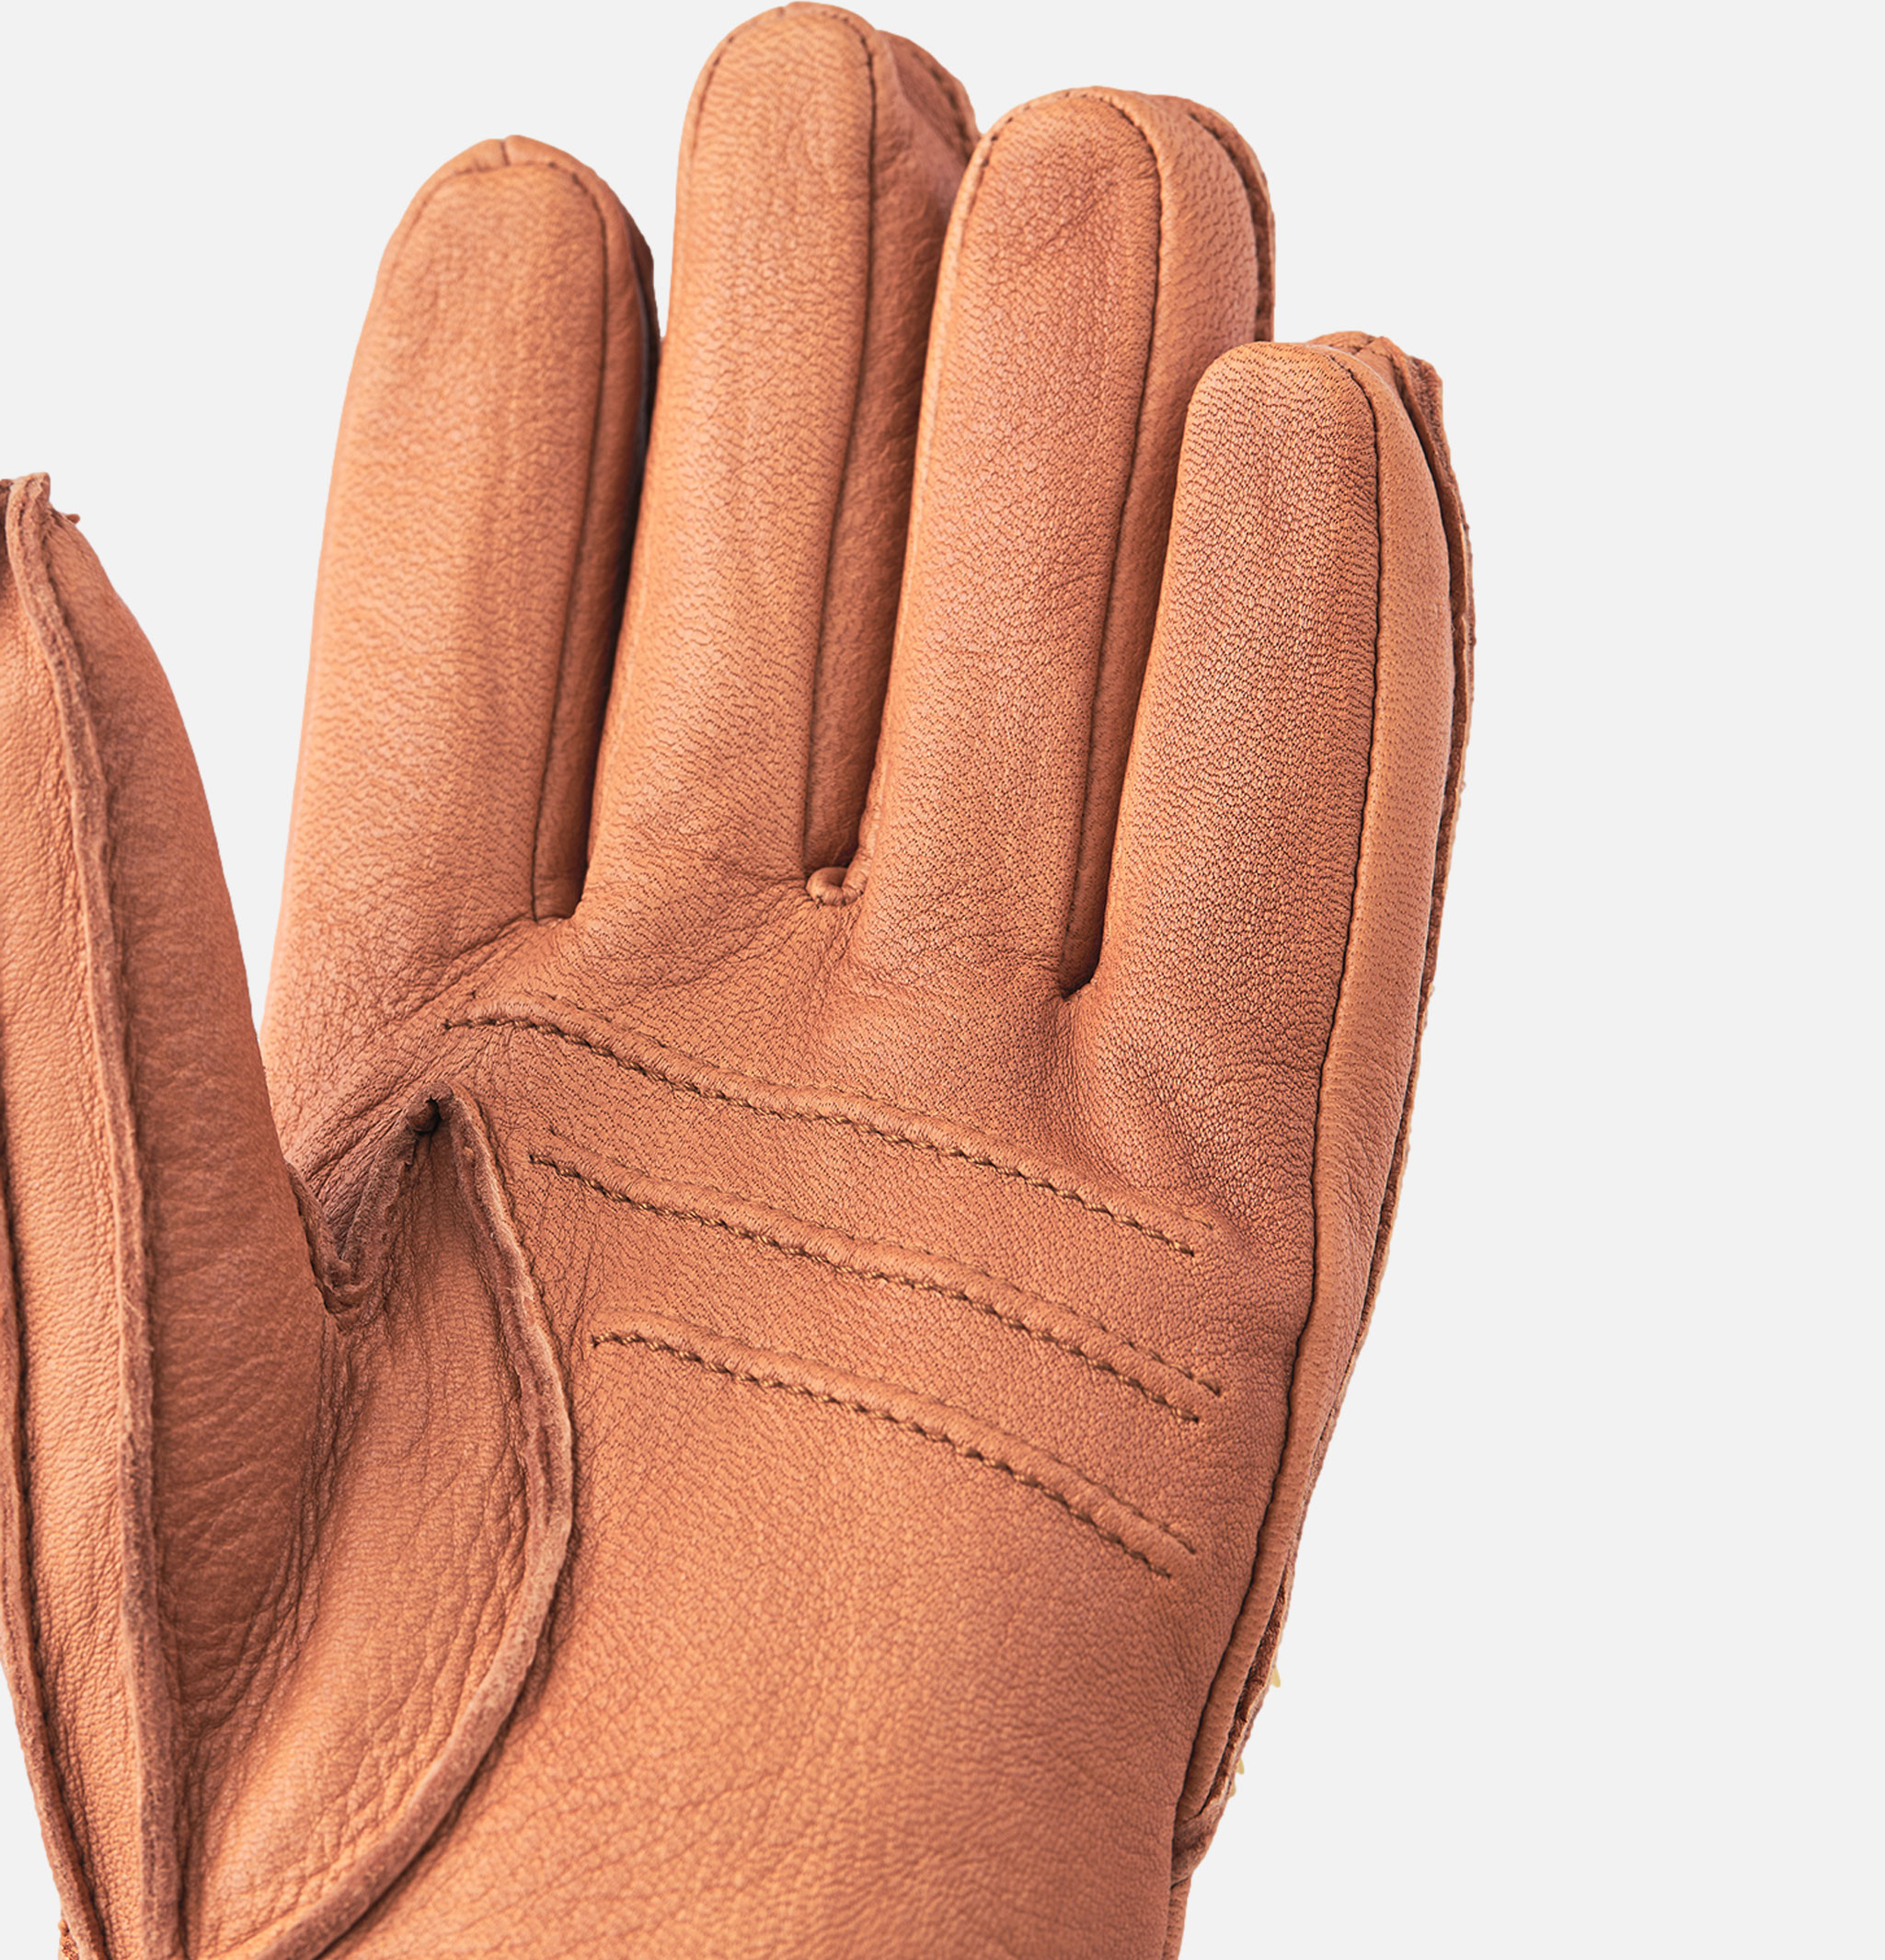 Deesrkin Gloves Cork